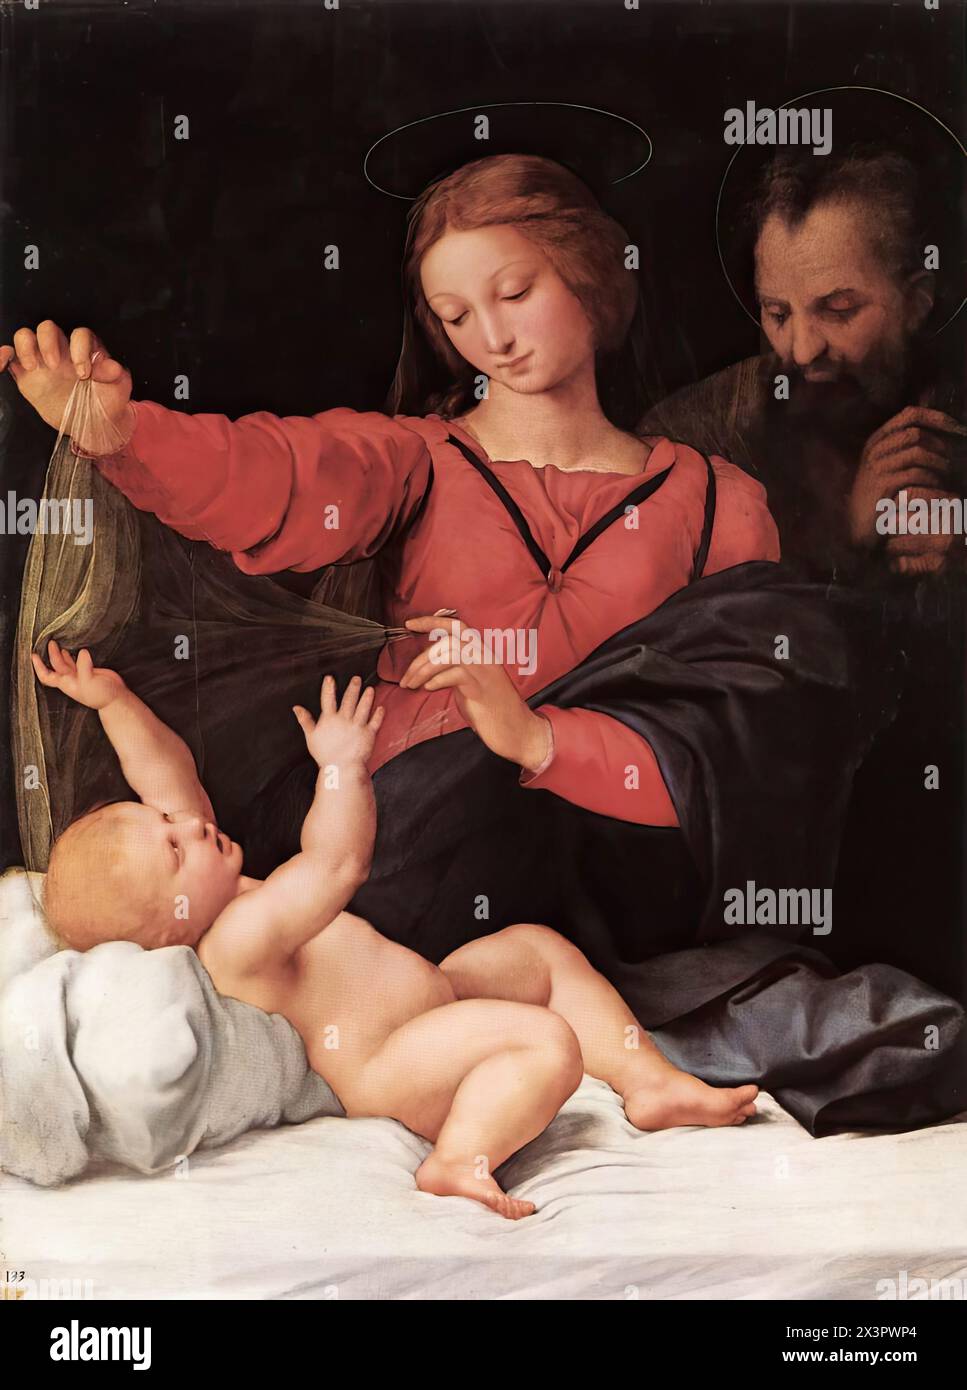 RAFFAELLO Sanzio (1483, Urbino, d. 1520, Roma) Madone de Lorette (Madonna del Velo) 1509-10 huile sur bois, 120 x 90 cm Musée Condé, Chantilly le tableau a été donné à l'église Santa Maria del Popolo à Rome par le pape Jules Ier La peinture, qui contient d'importantes peintures, a été attribuée à Penni jusqu'en 1979, date à laquelle elle a sans aucun doute été identifiée comme l'œuvre de Raphaël. C'est l'une des œuvres les plus copiées de Raphaël, le nombre d'exemplaires connus est proche de 120. Son nom est dérivé de l'une des copies - aujourd'hui perdues - de la basilique Santa Casa di Loreto à Rome. Cette copie a été pensée pour long TI Banque D'Images